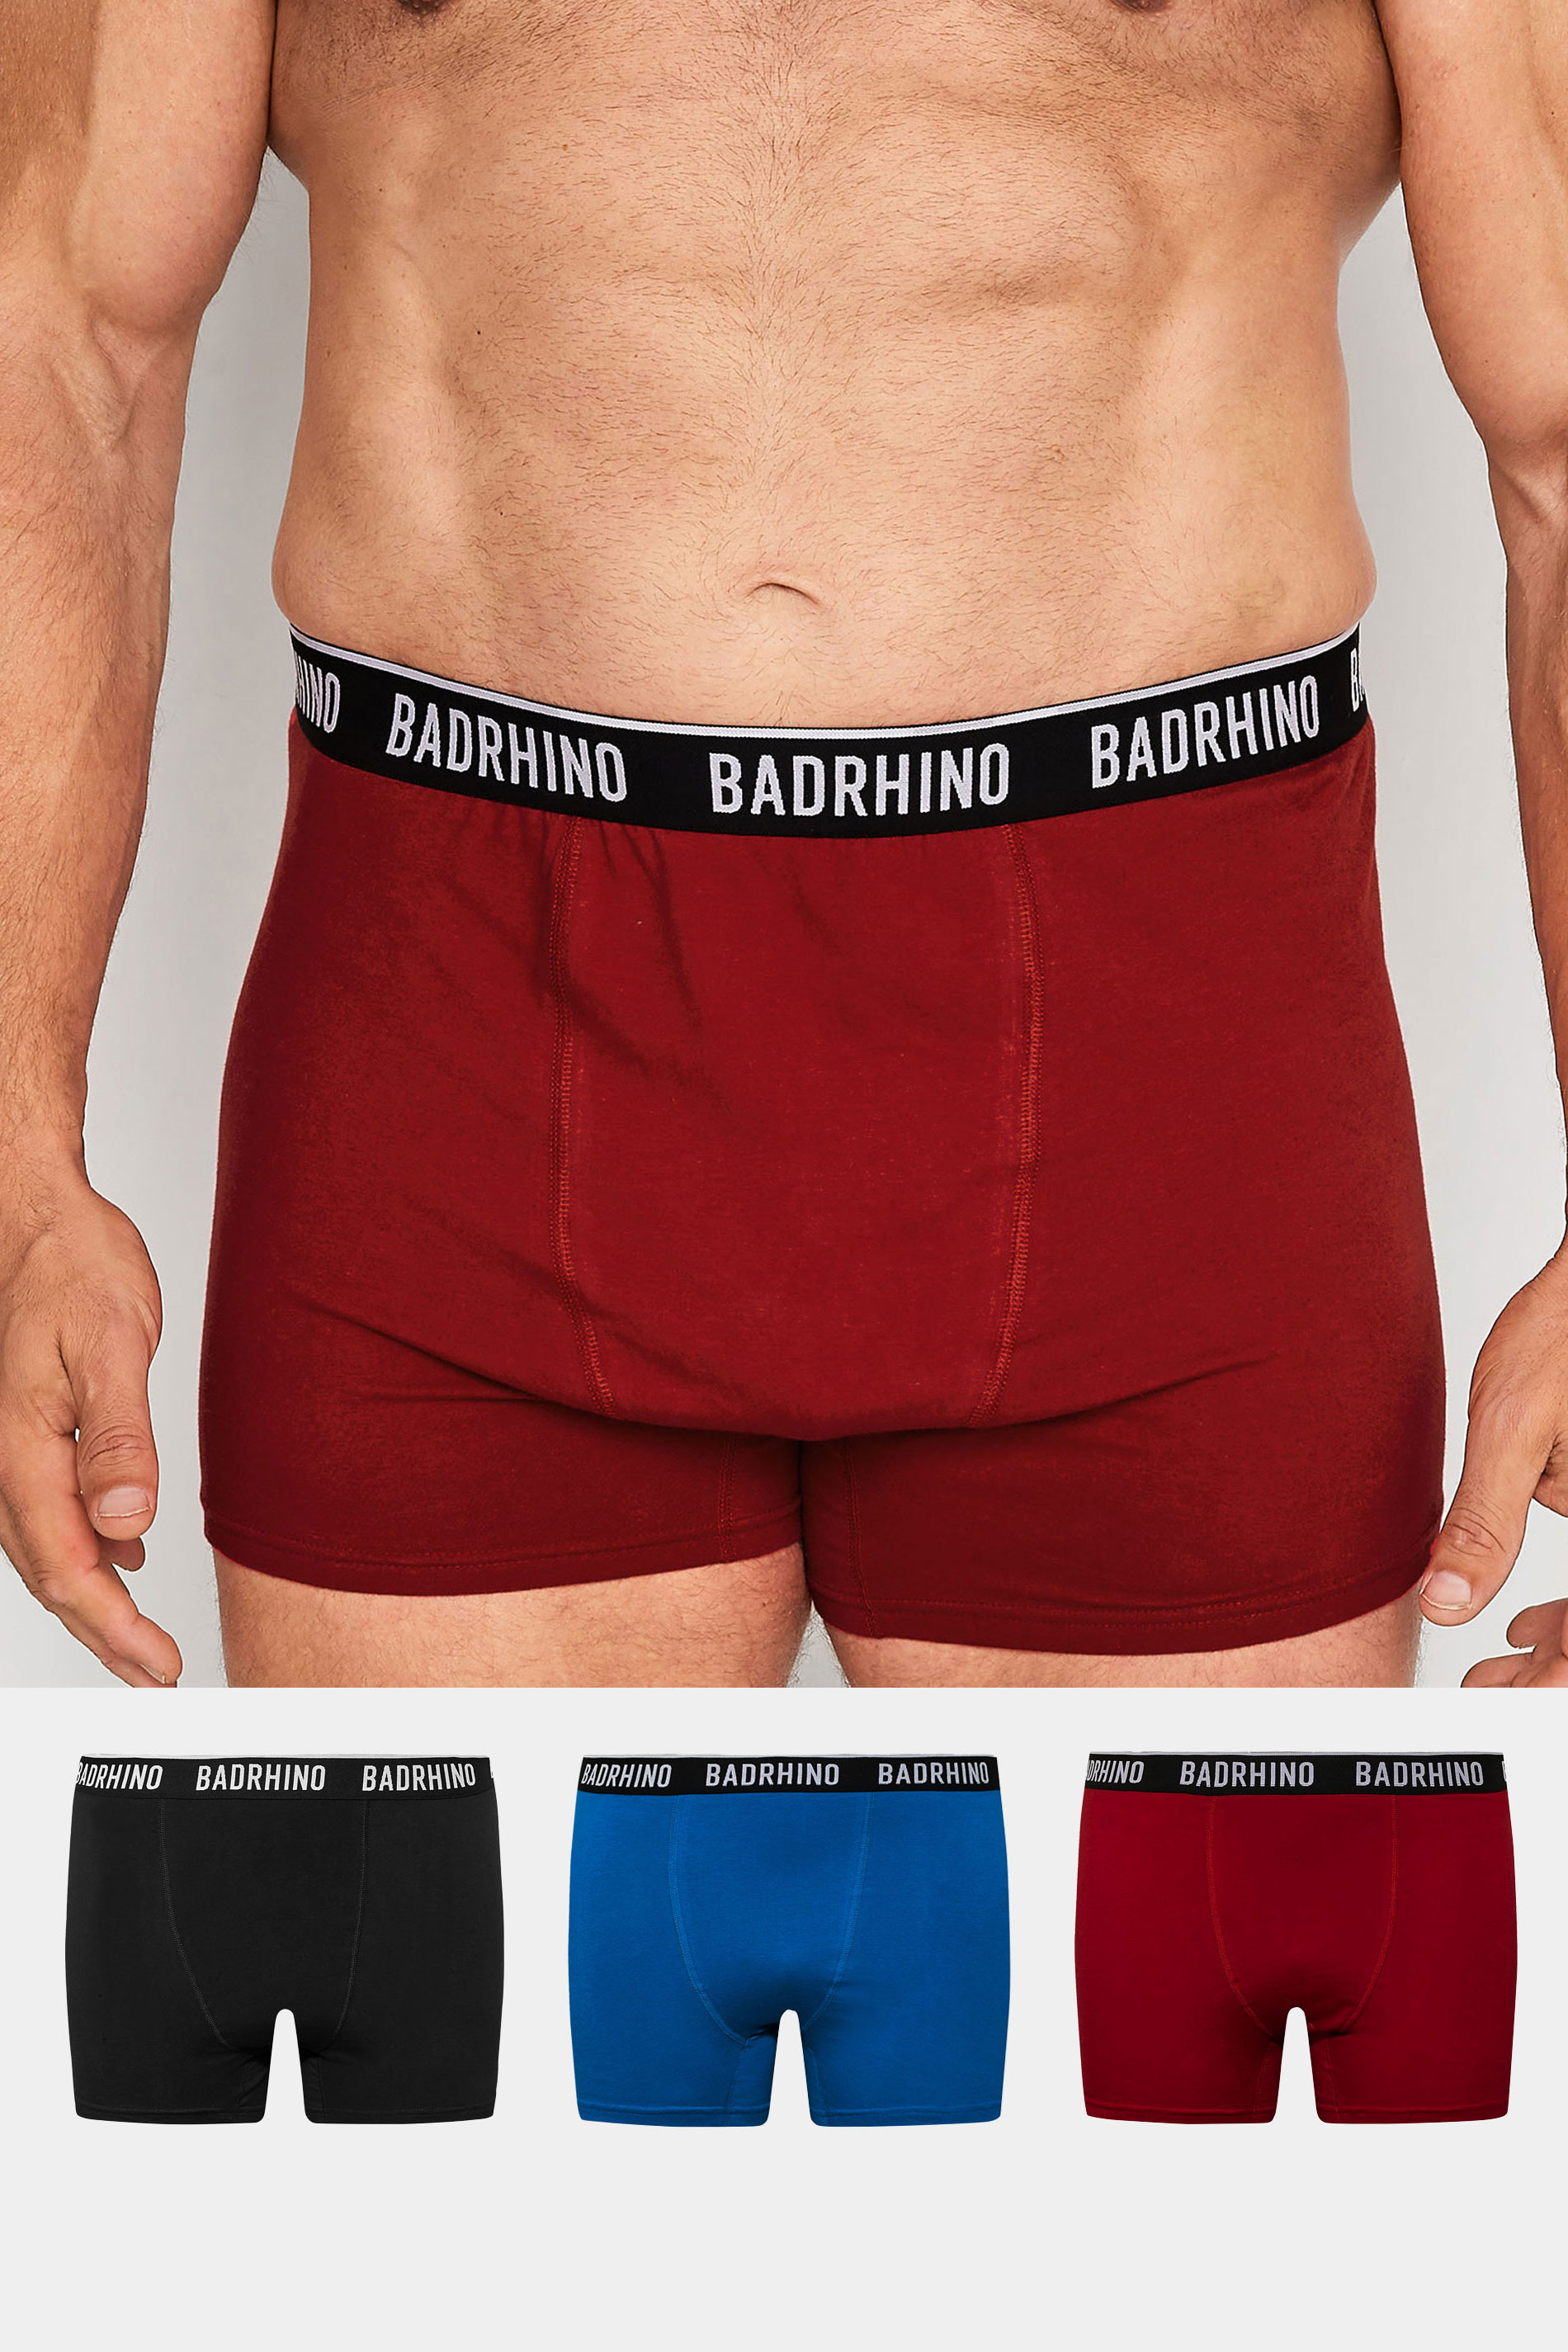 BadRhino Big & Tall 3 PACK Black Boxers | BadRhino 1